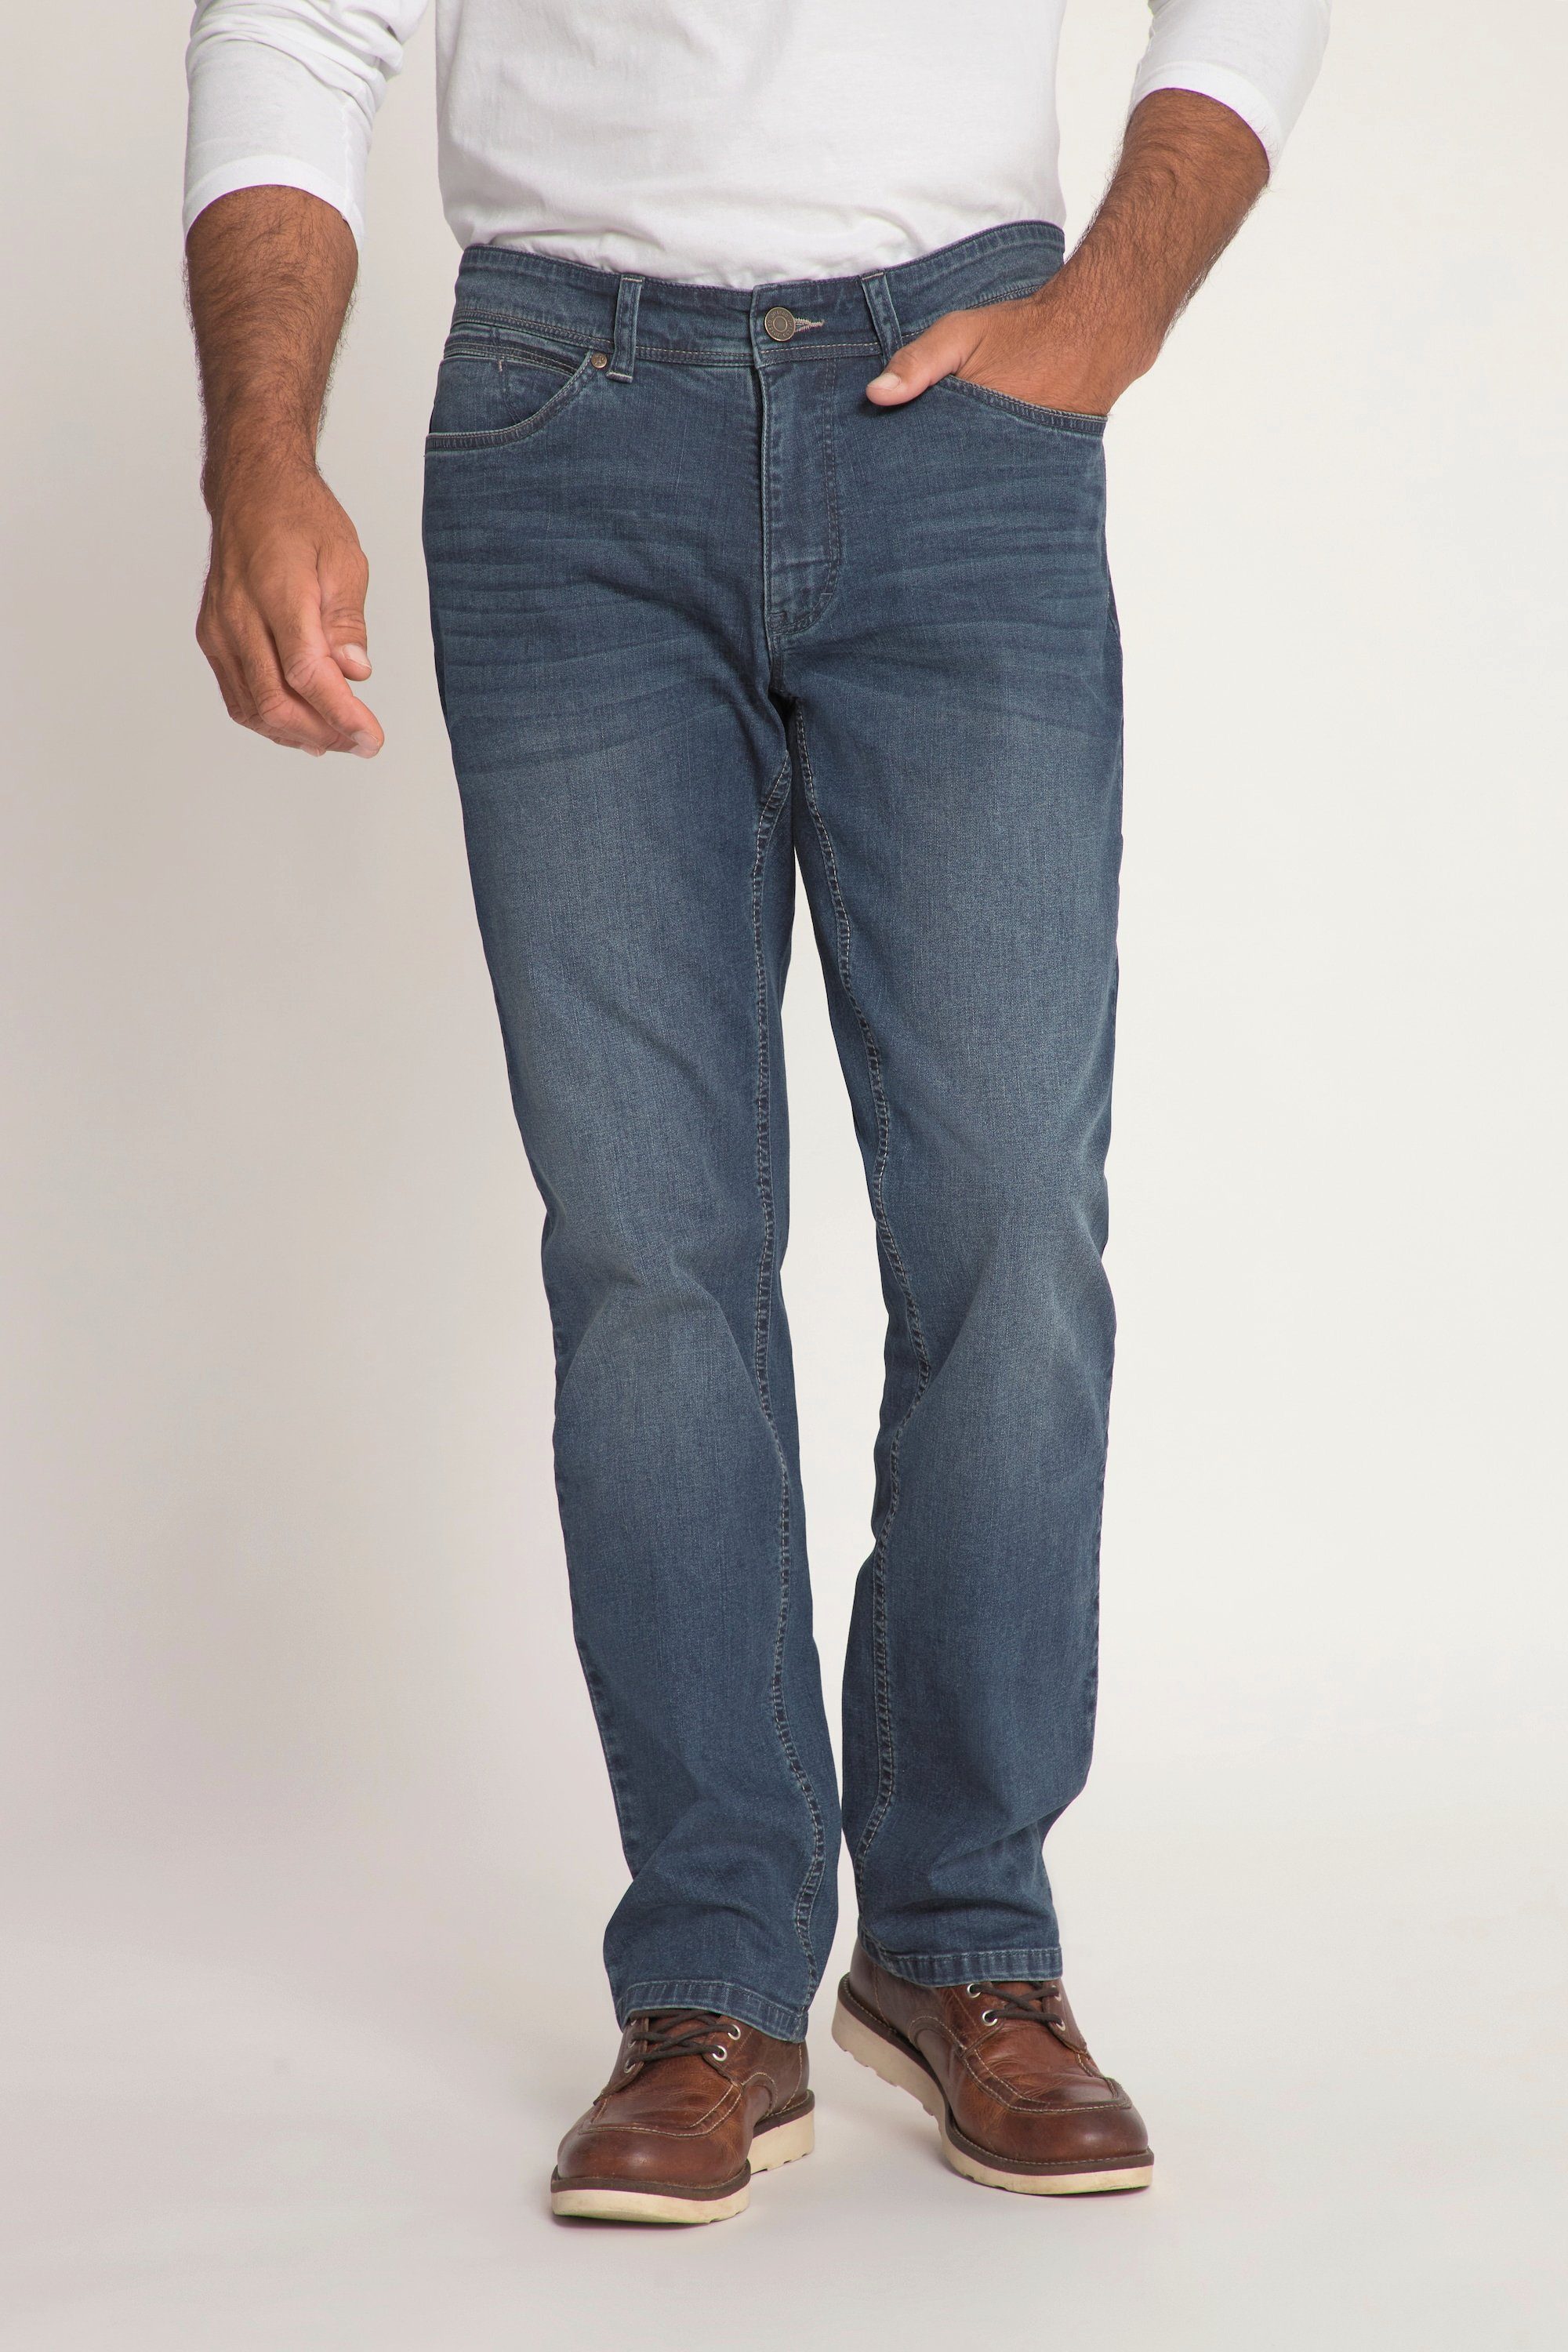 Regular Cargohose JP1880 Jeans lightweight Bauchfit Fit 5-Pocket